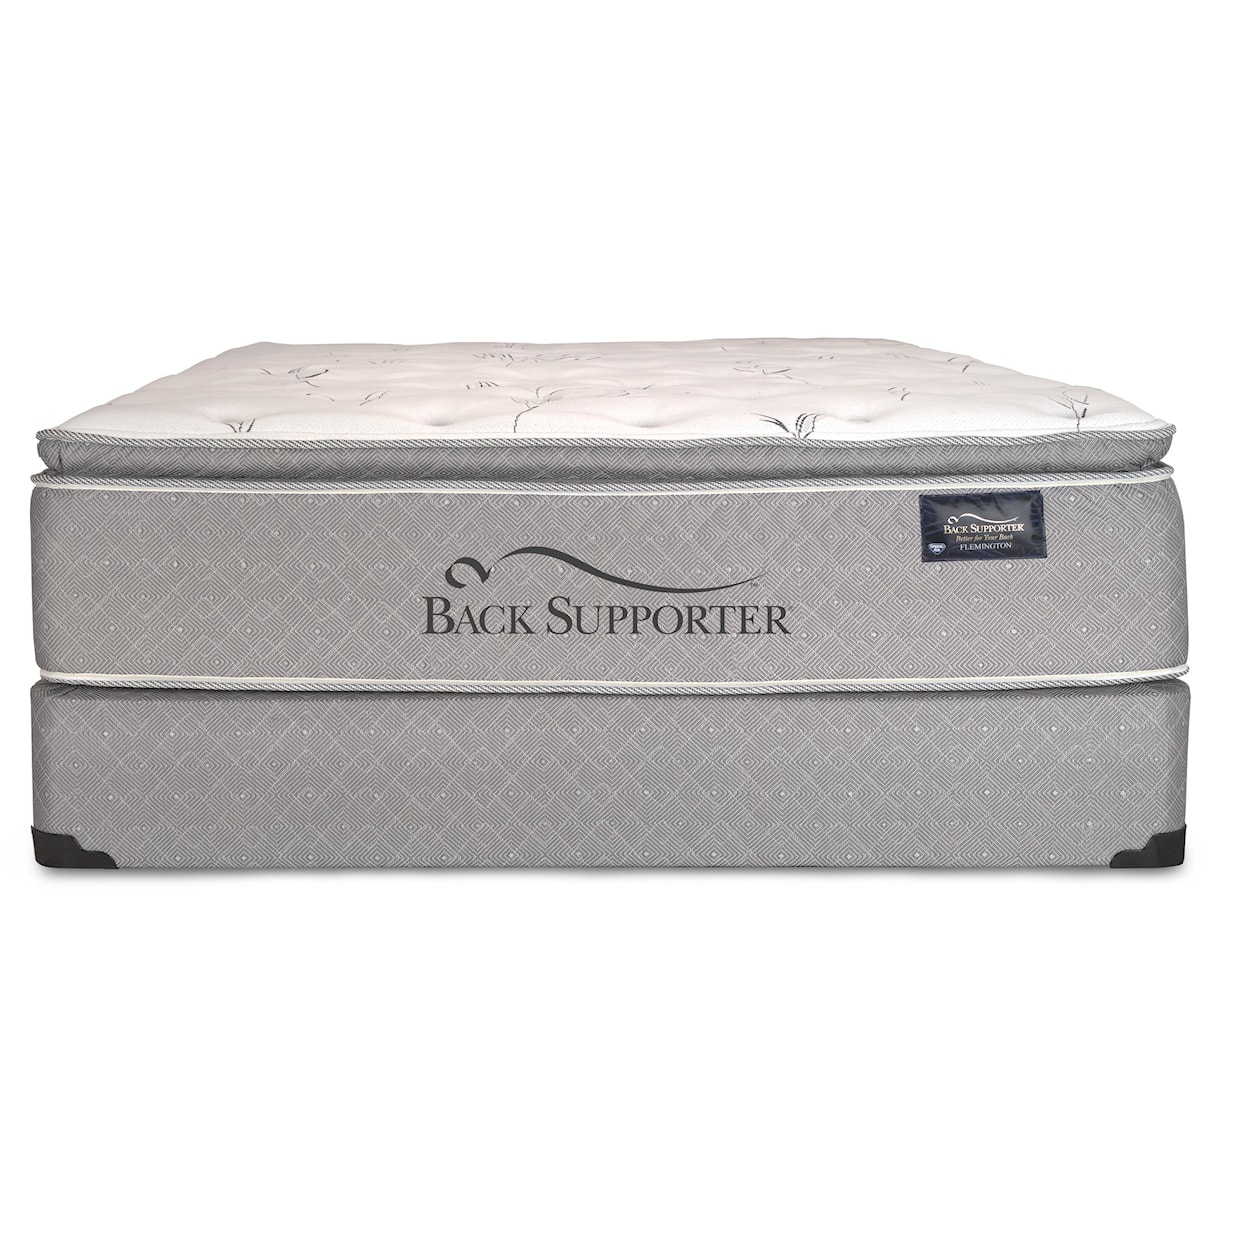 Spring Air Back Supporter Luxuriance Queen Super Pillow Top Mattress